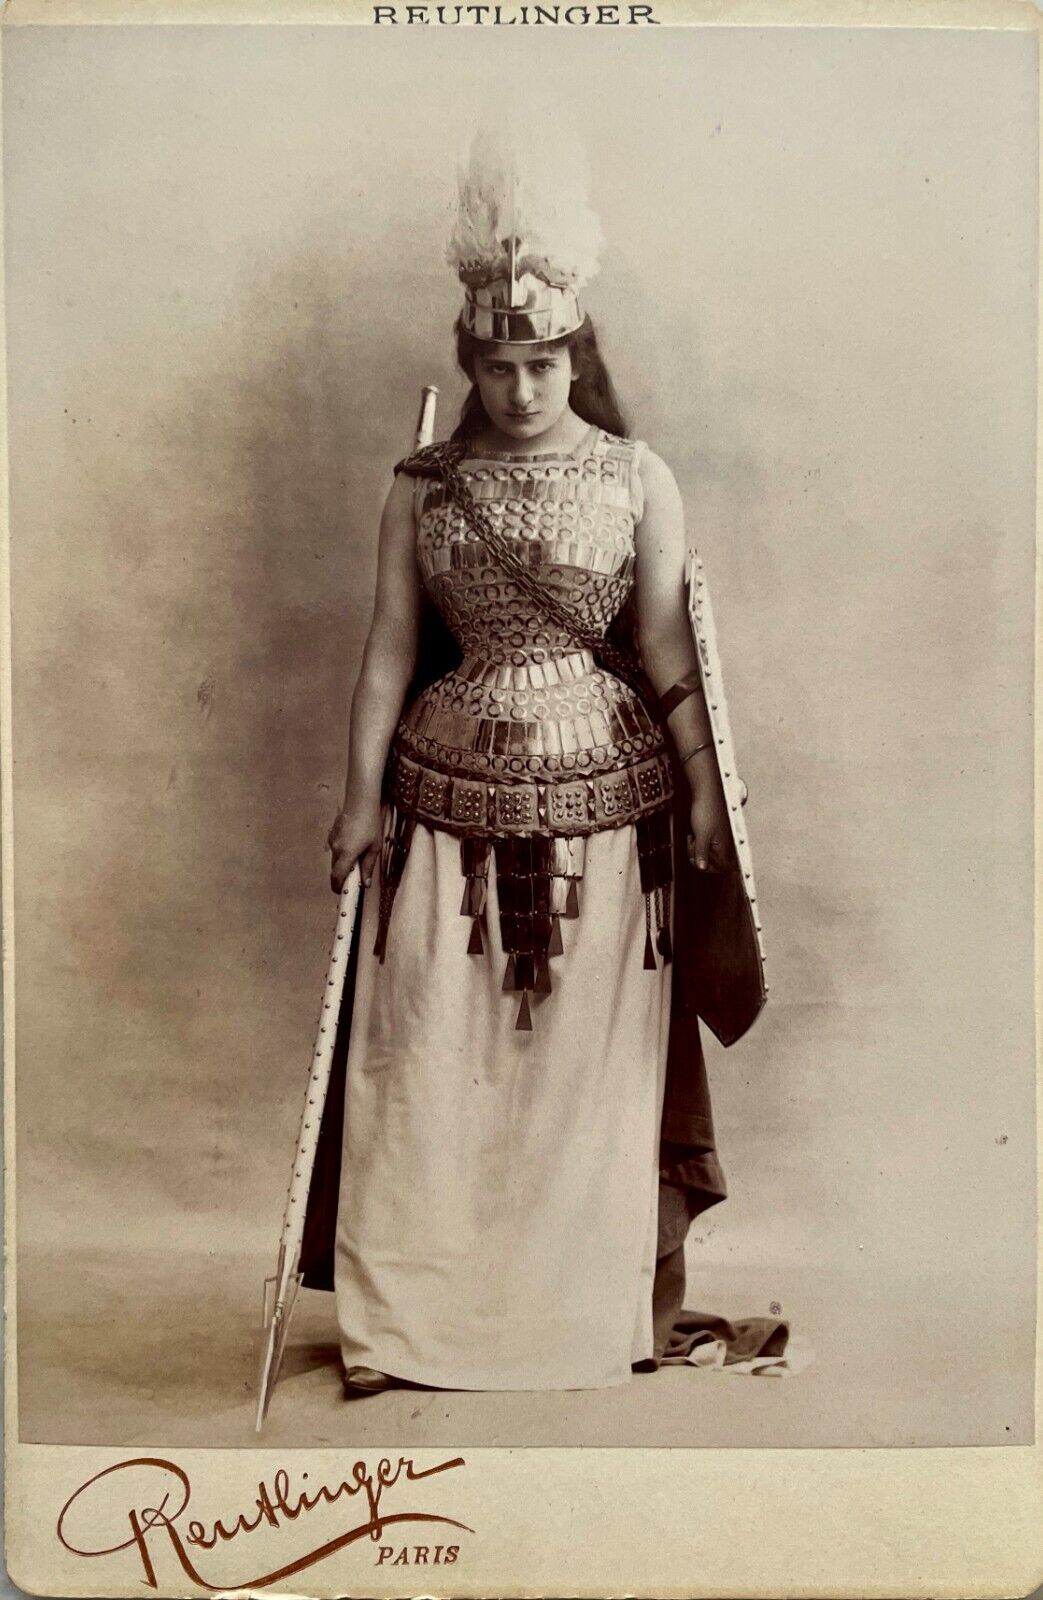 CABINET CARD REUTLINGER, Paris ca 1890 Lucienne BREVAL singer, opera